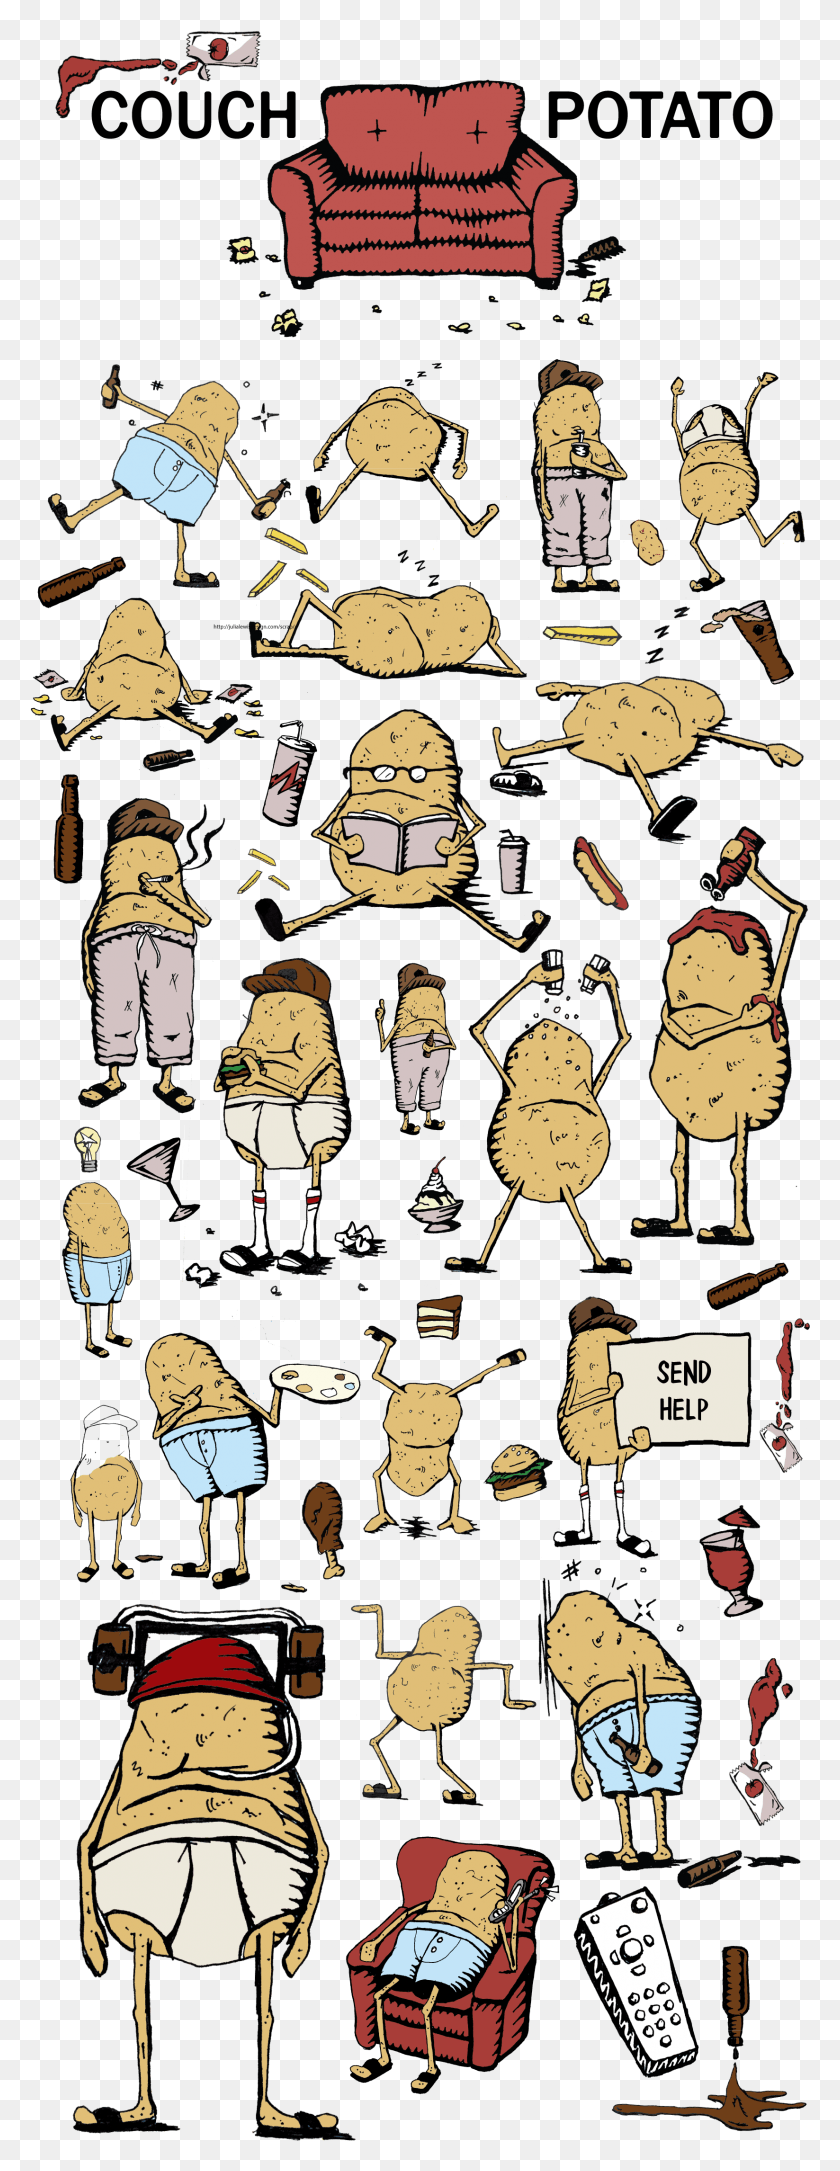 1647x4458 Ralph The Potato Tiene Muchos Talentos Como Beber Cerveza De Dibujos Animados, Persona, Humano, Texto Hd Png